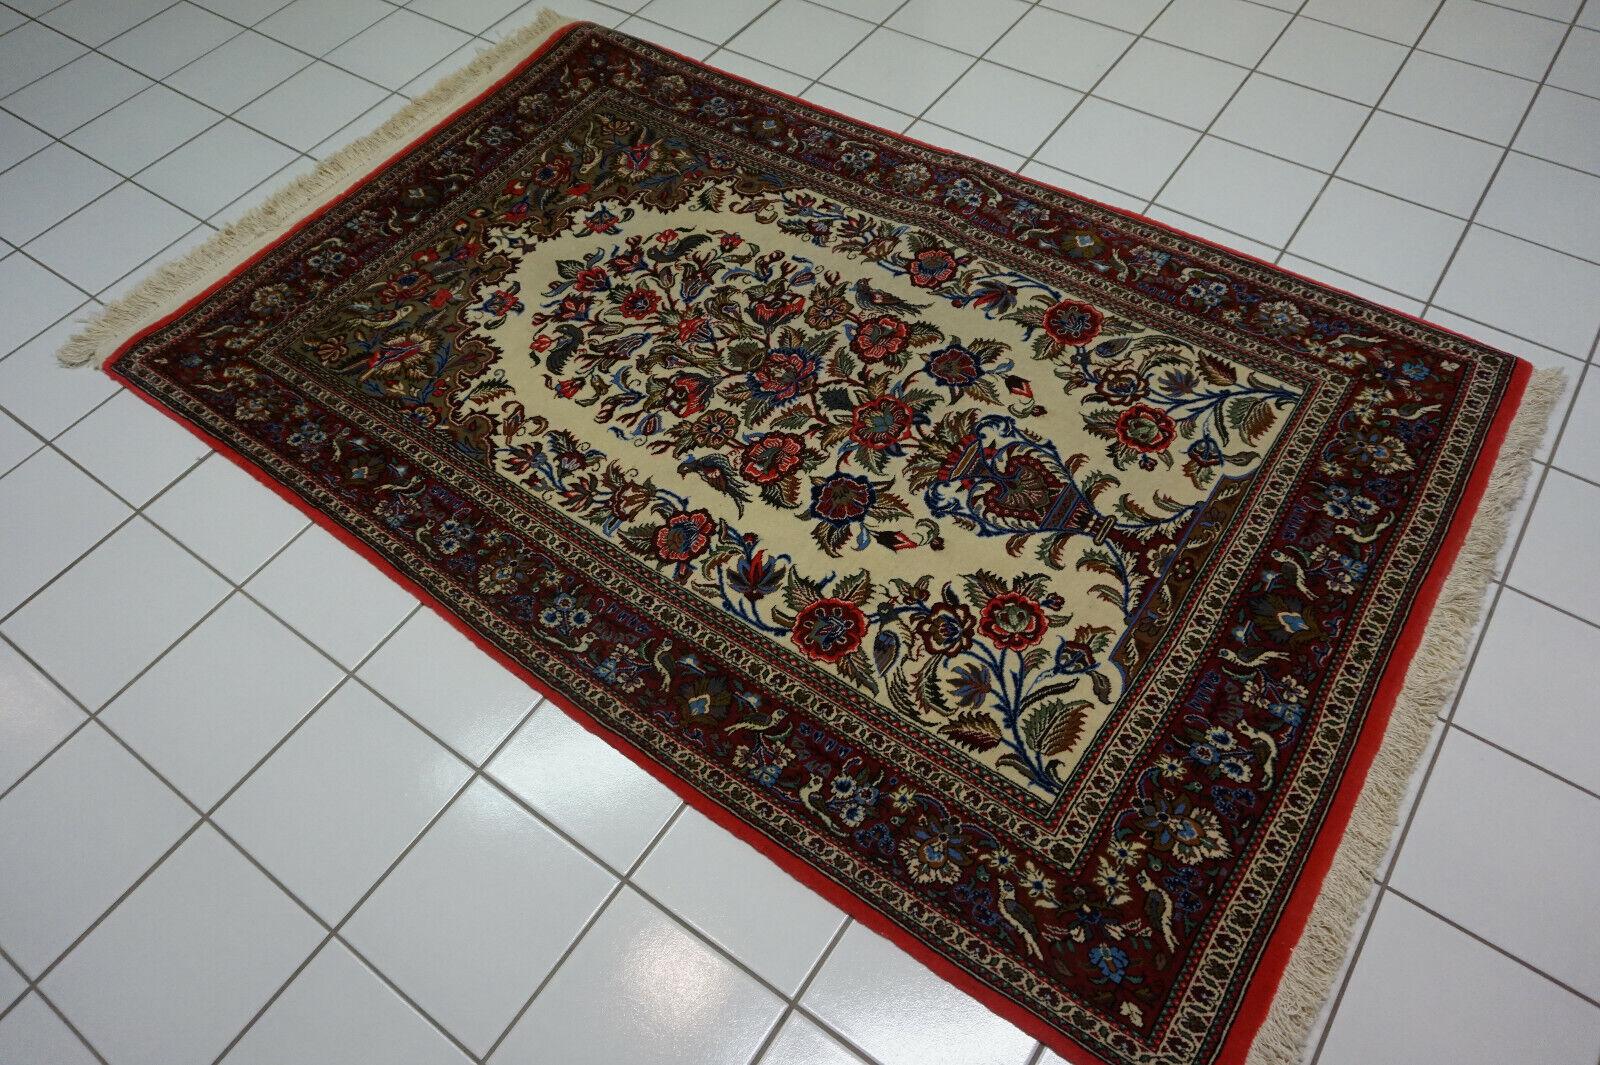 Handgefertigter Qum-Teppich im persischen Vintage-Stil

Dieser handgefertigte Qum-Teppich im persischen Vintage-Stil ist ein atemberaubendes Dekorationsstück, das Ihrem Zuhause einen Hauch von Eleganz und Spiritualität verleiht. Dieser in den 1970er